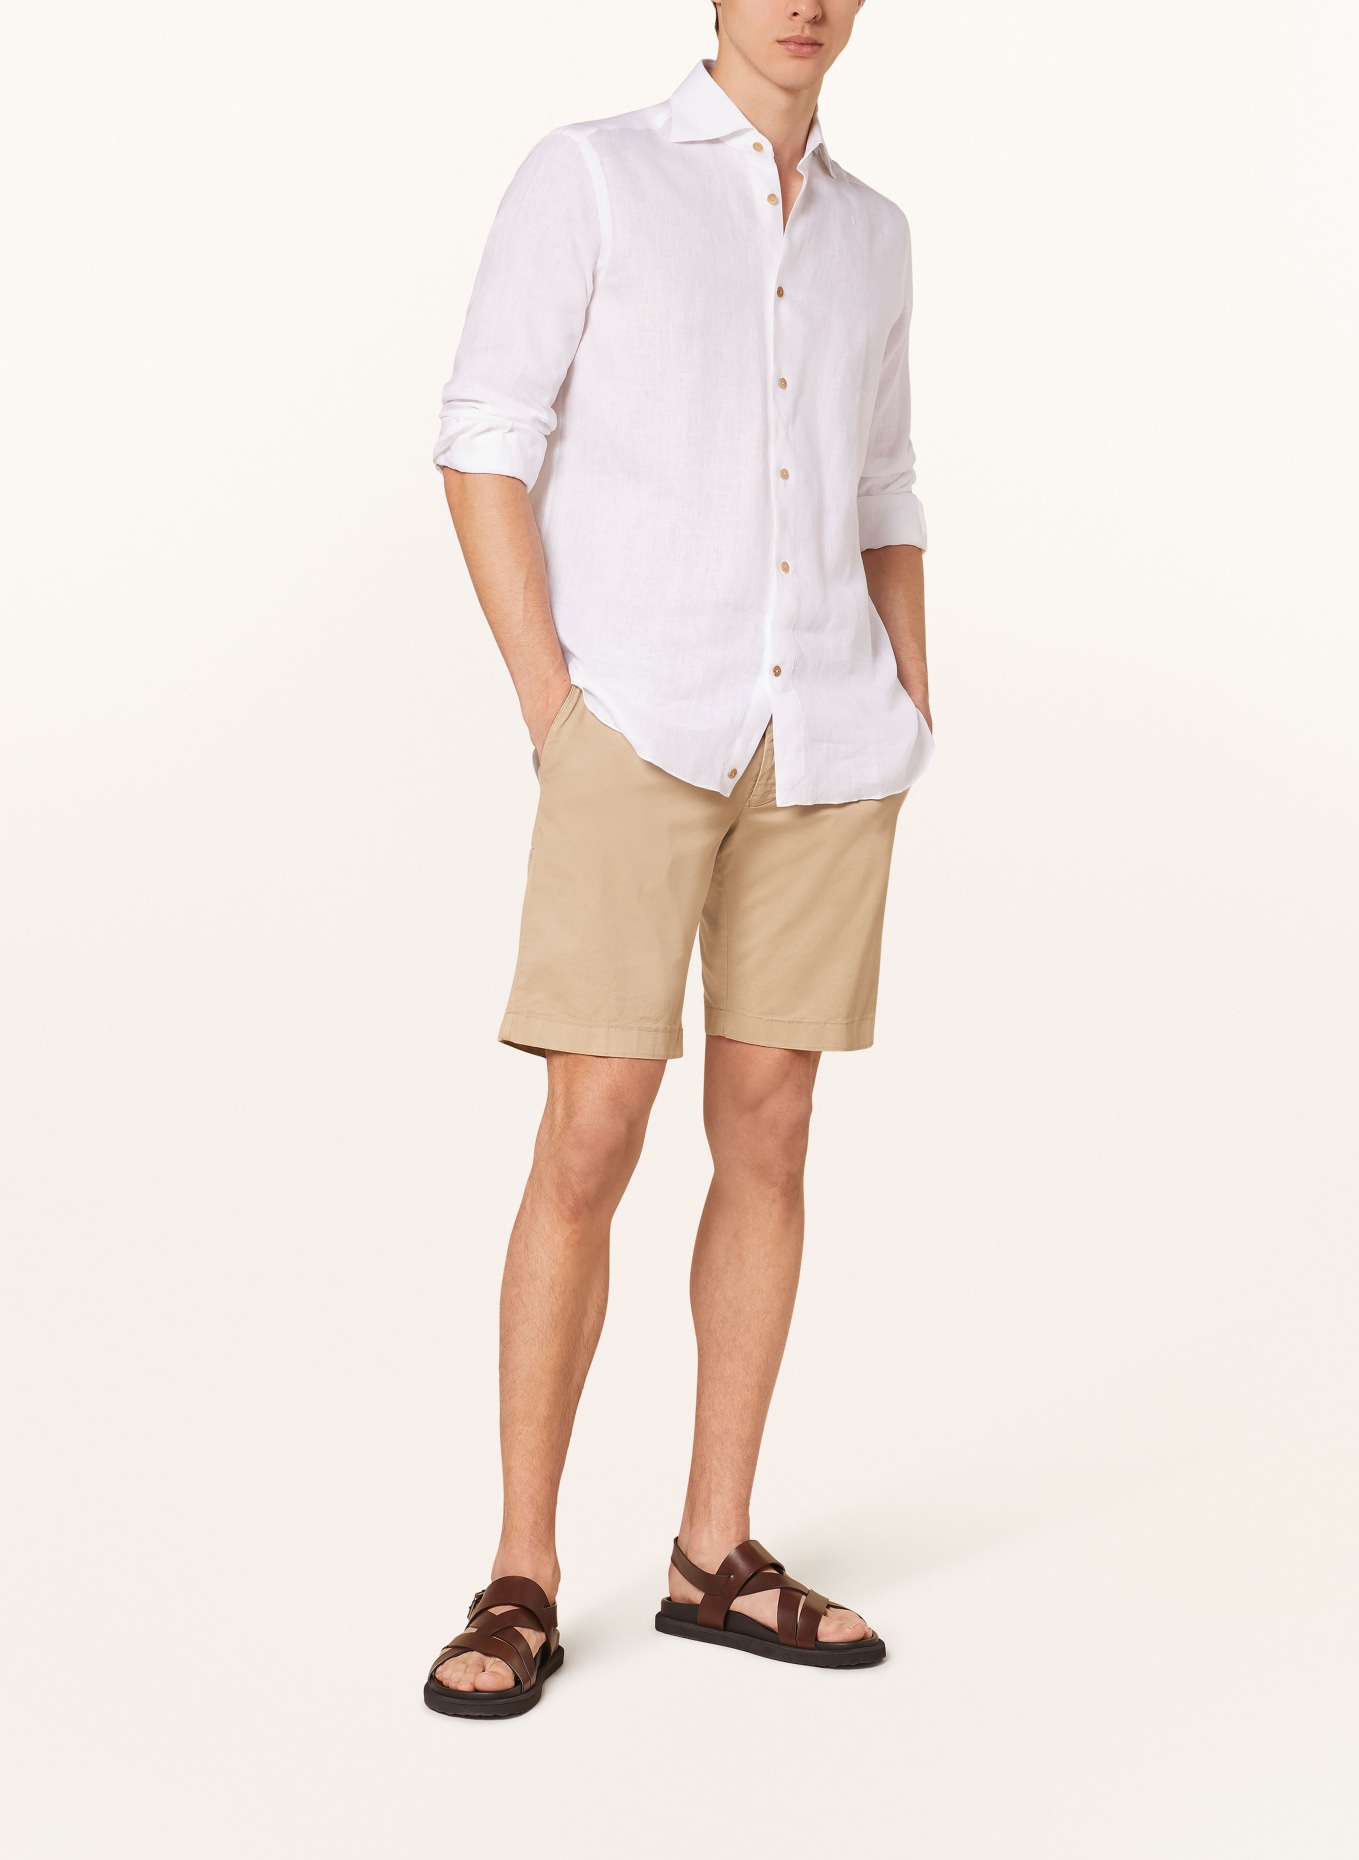 RIPA RIPA Linen shirt regular fit, Color: WHITE (Image 2)